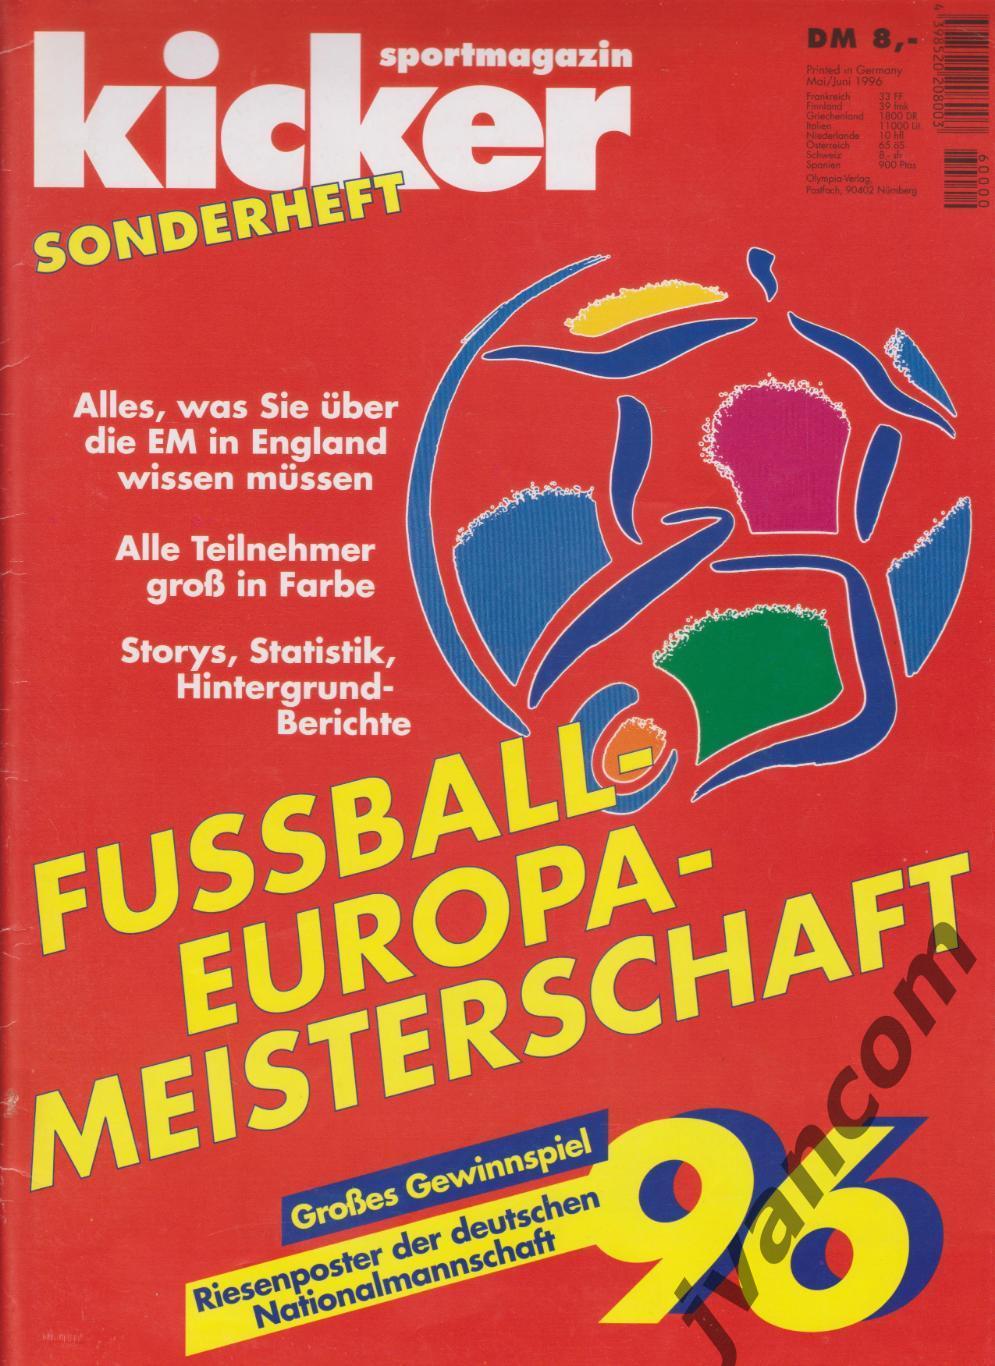 KICKER SONDERHEFT. Чемпионат Европы по футболу 1996 года. Превью участников.